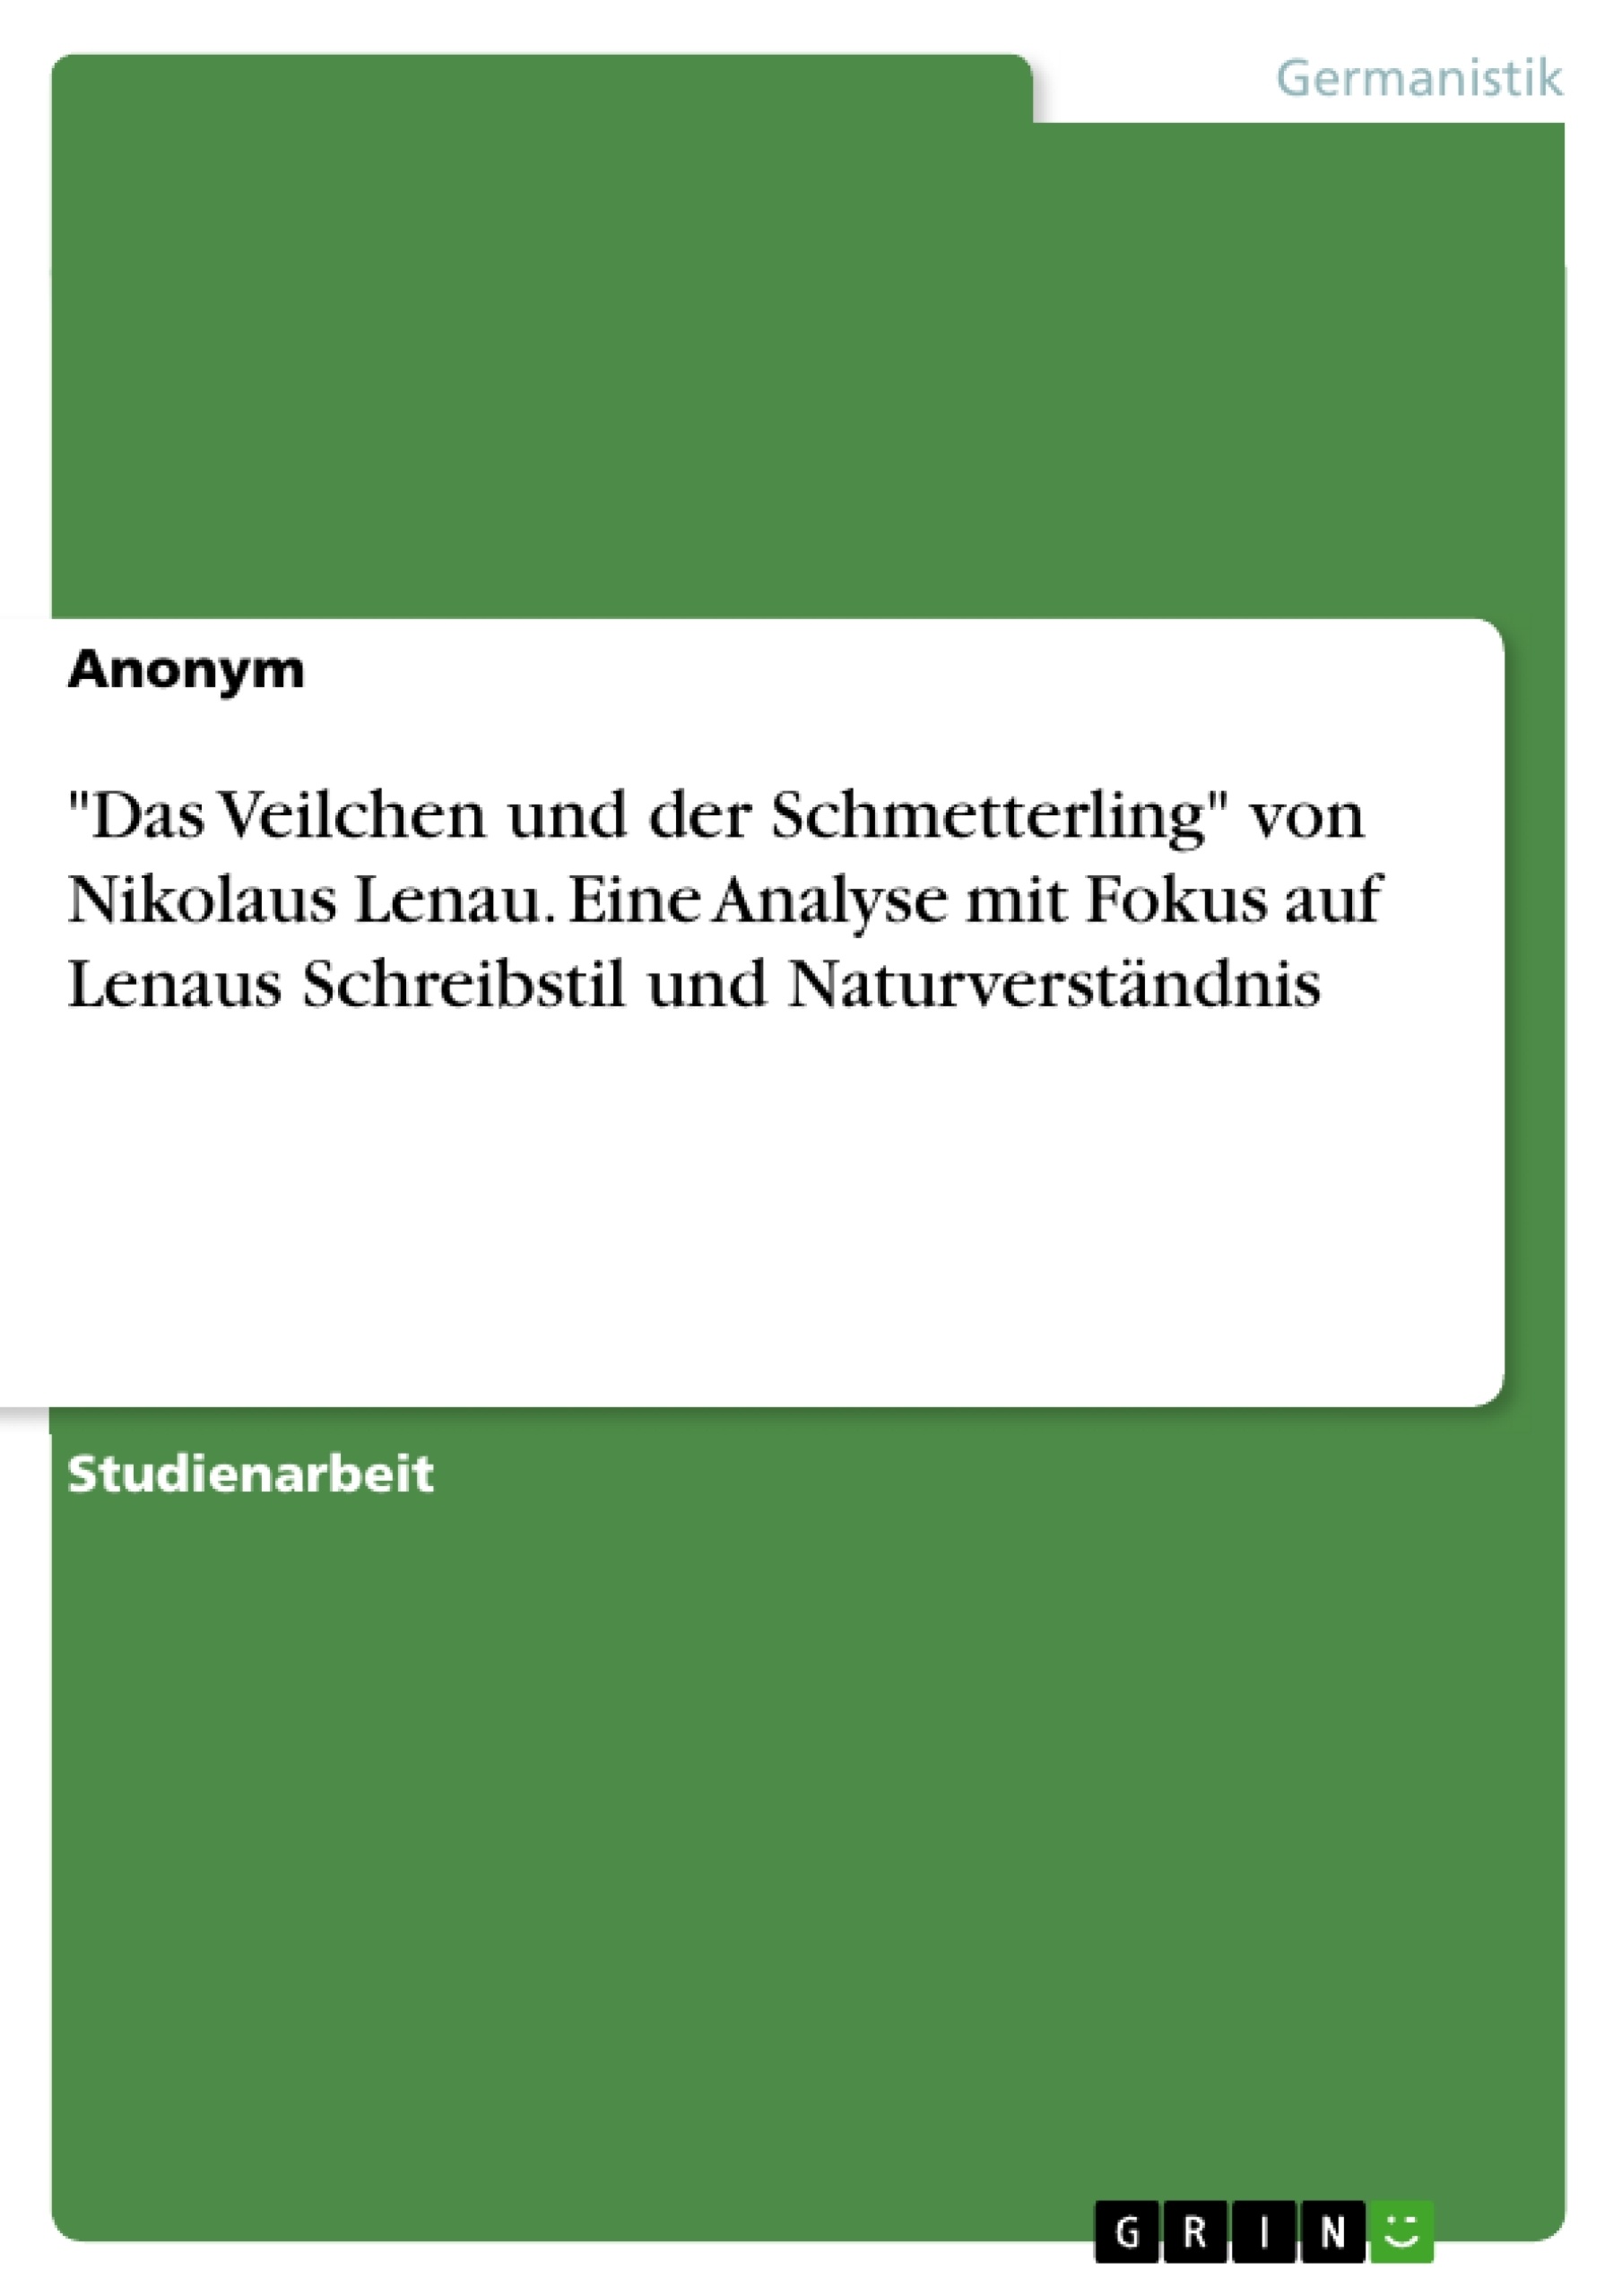 Title: "Das Veilchen und der Schmetterling" von Nikolaus Lenau. Eine Analyse mit Fokus auf Lenaus Schreibstil und Naturverständnis